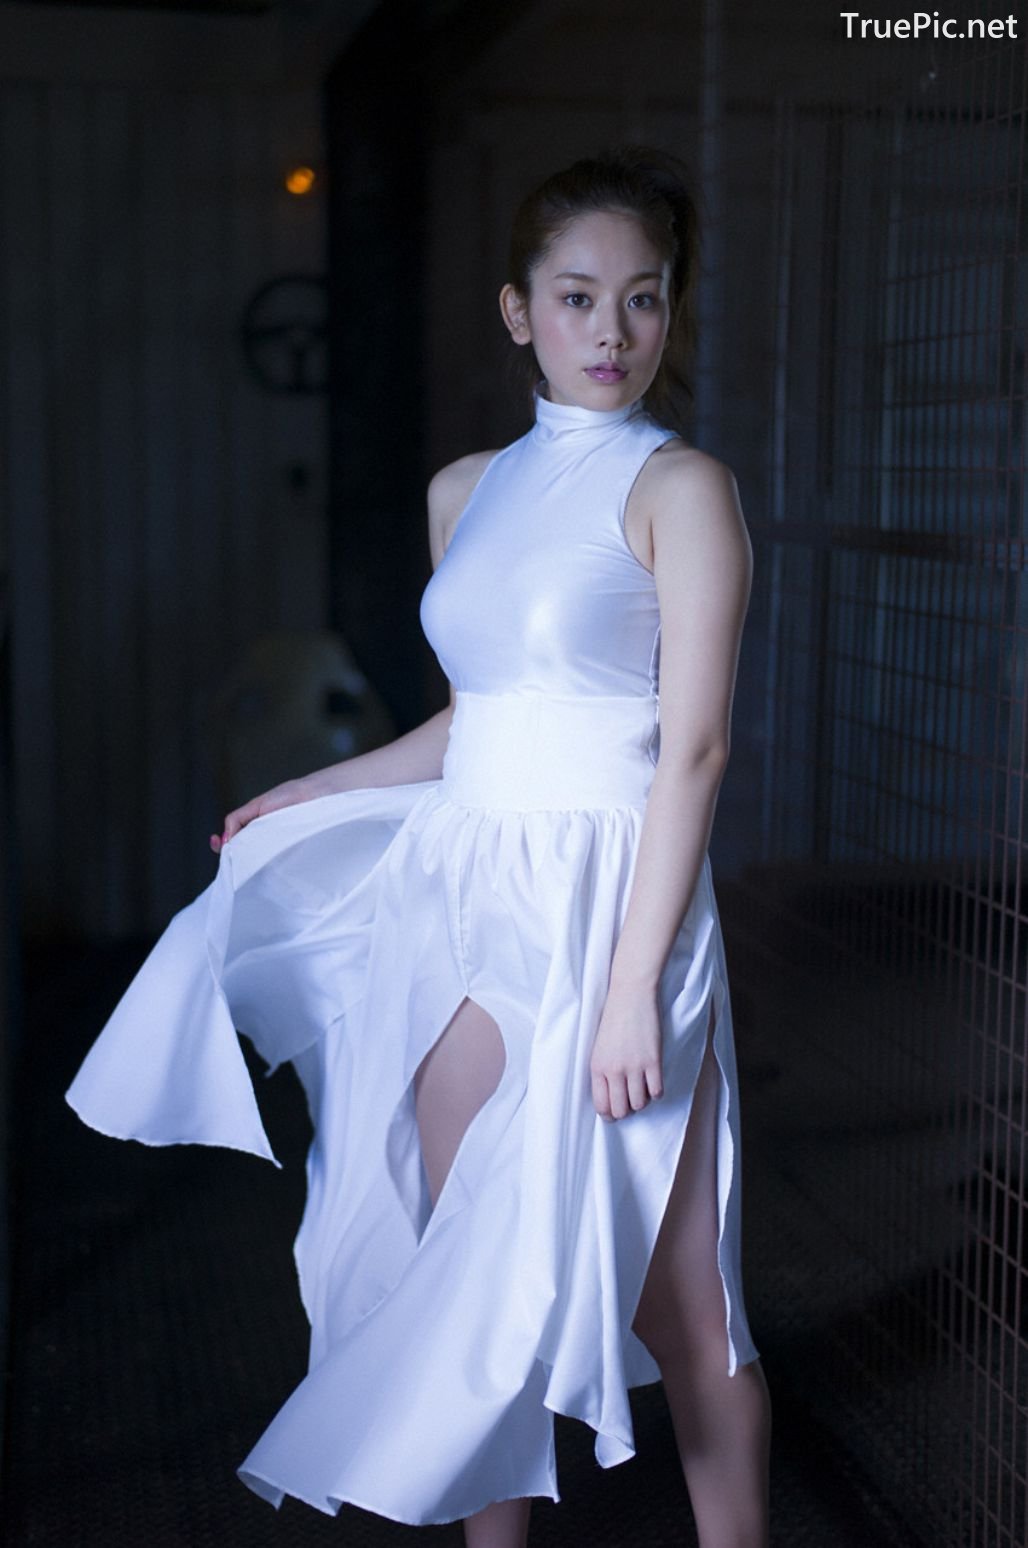 Image-Japanese-Gravure-Idol-Miwako-Kakei-Sexy-Japanese-Angel-With-Hot-Body-TruePic.net- Picture-29